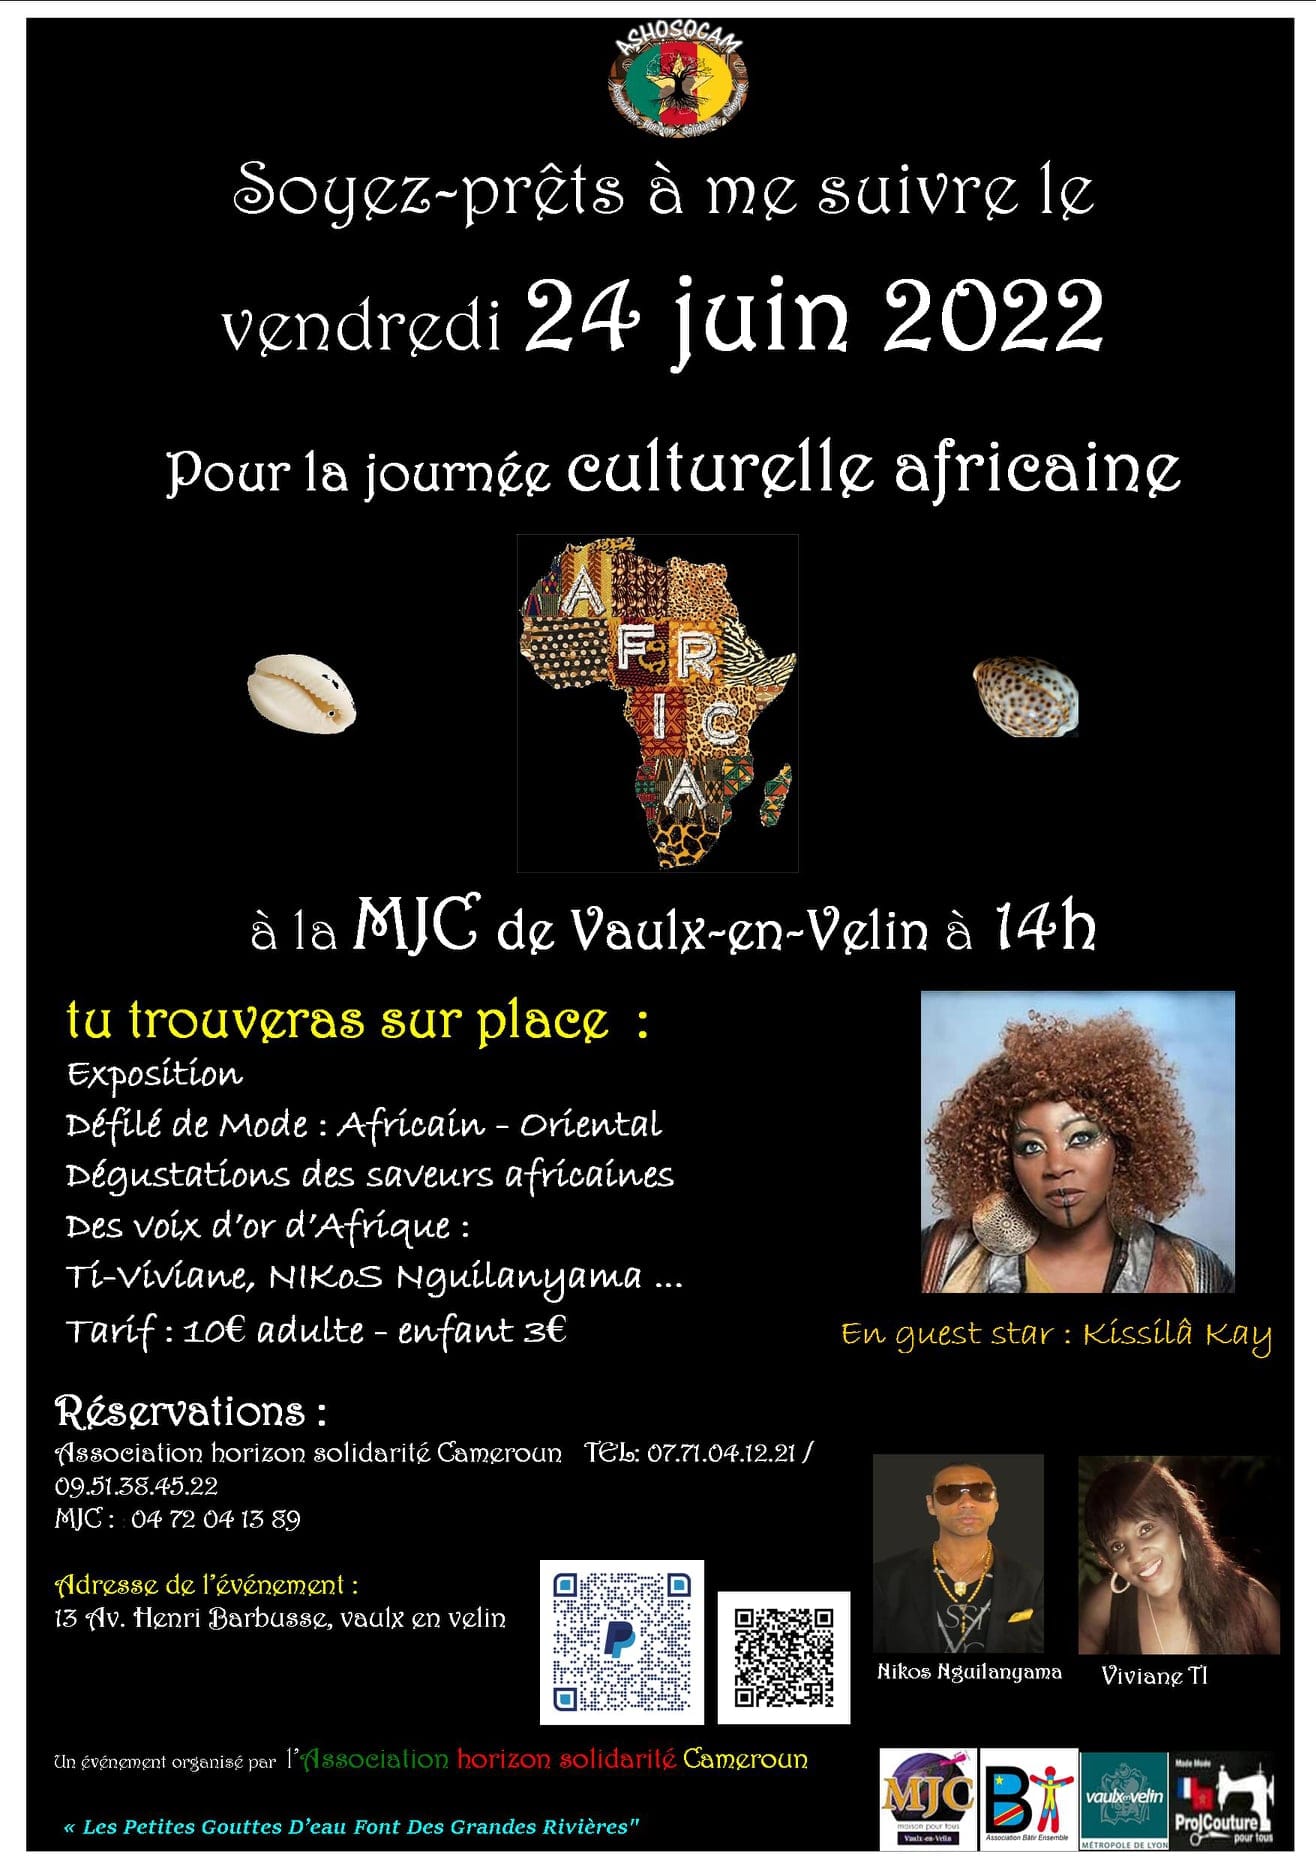 Journée culturelle africaine 2022